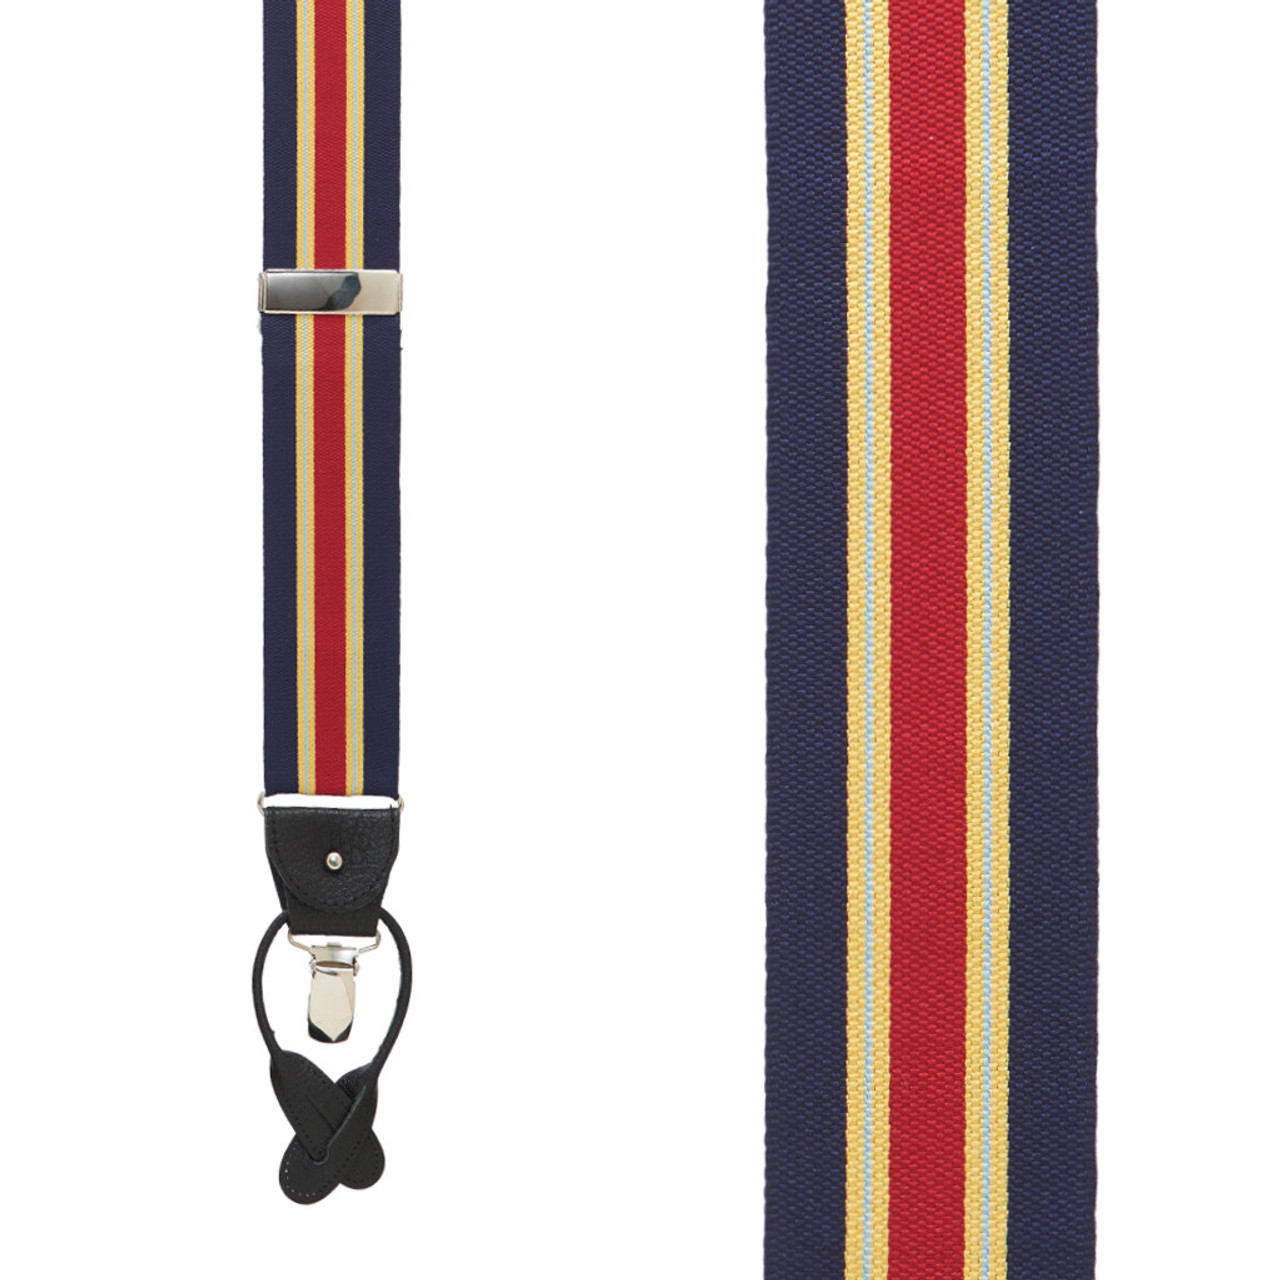 Albert Thurston Braces/Suspenders Woven Barathea Pinstripe Style